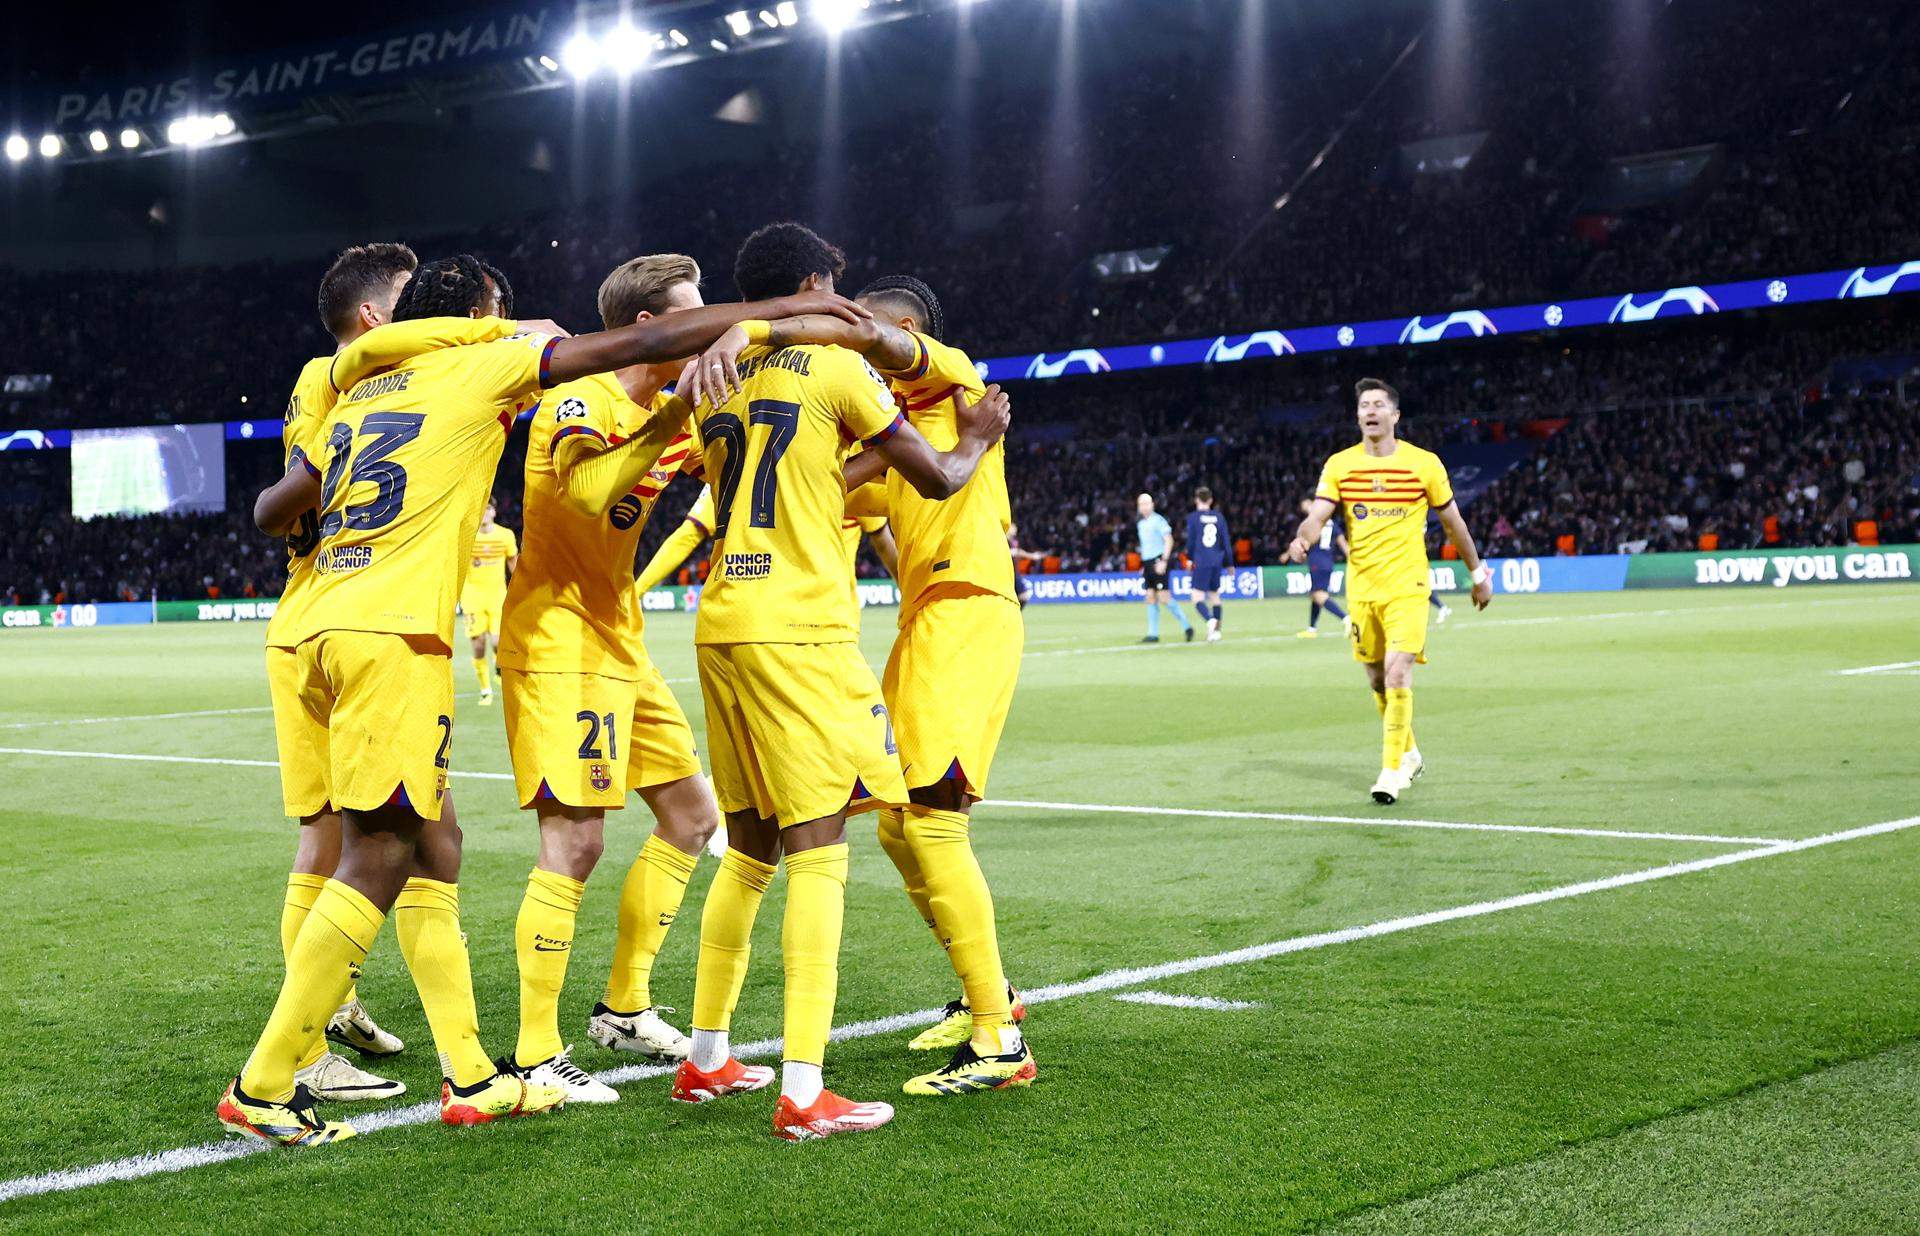 El Barça conquereix París amb una èpica victòria contra el PSG a l'anada dels quarts de la Champions (2-3)